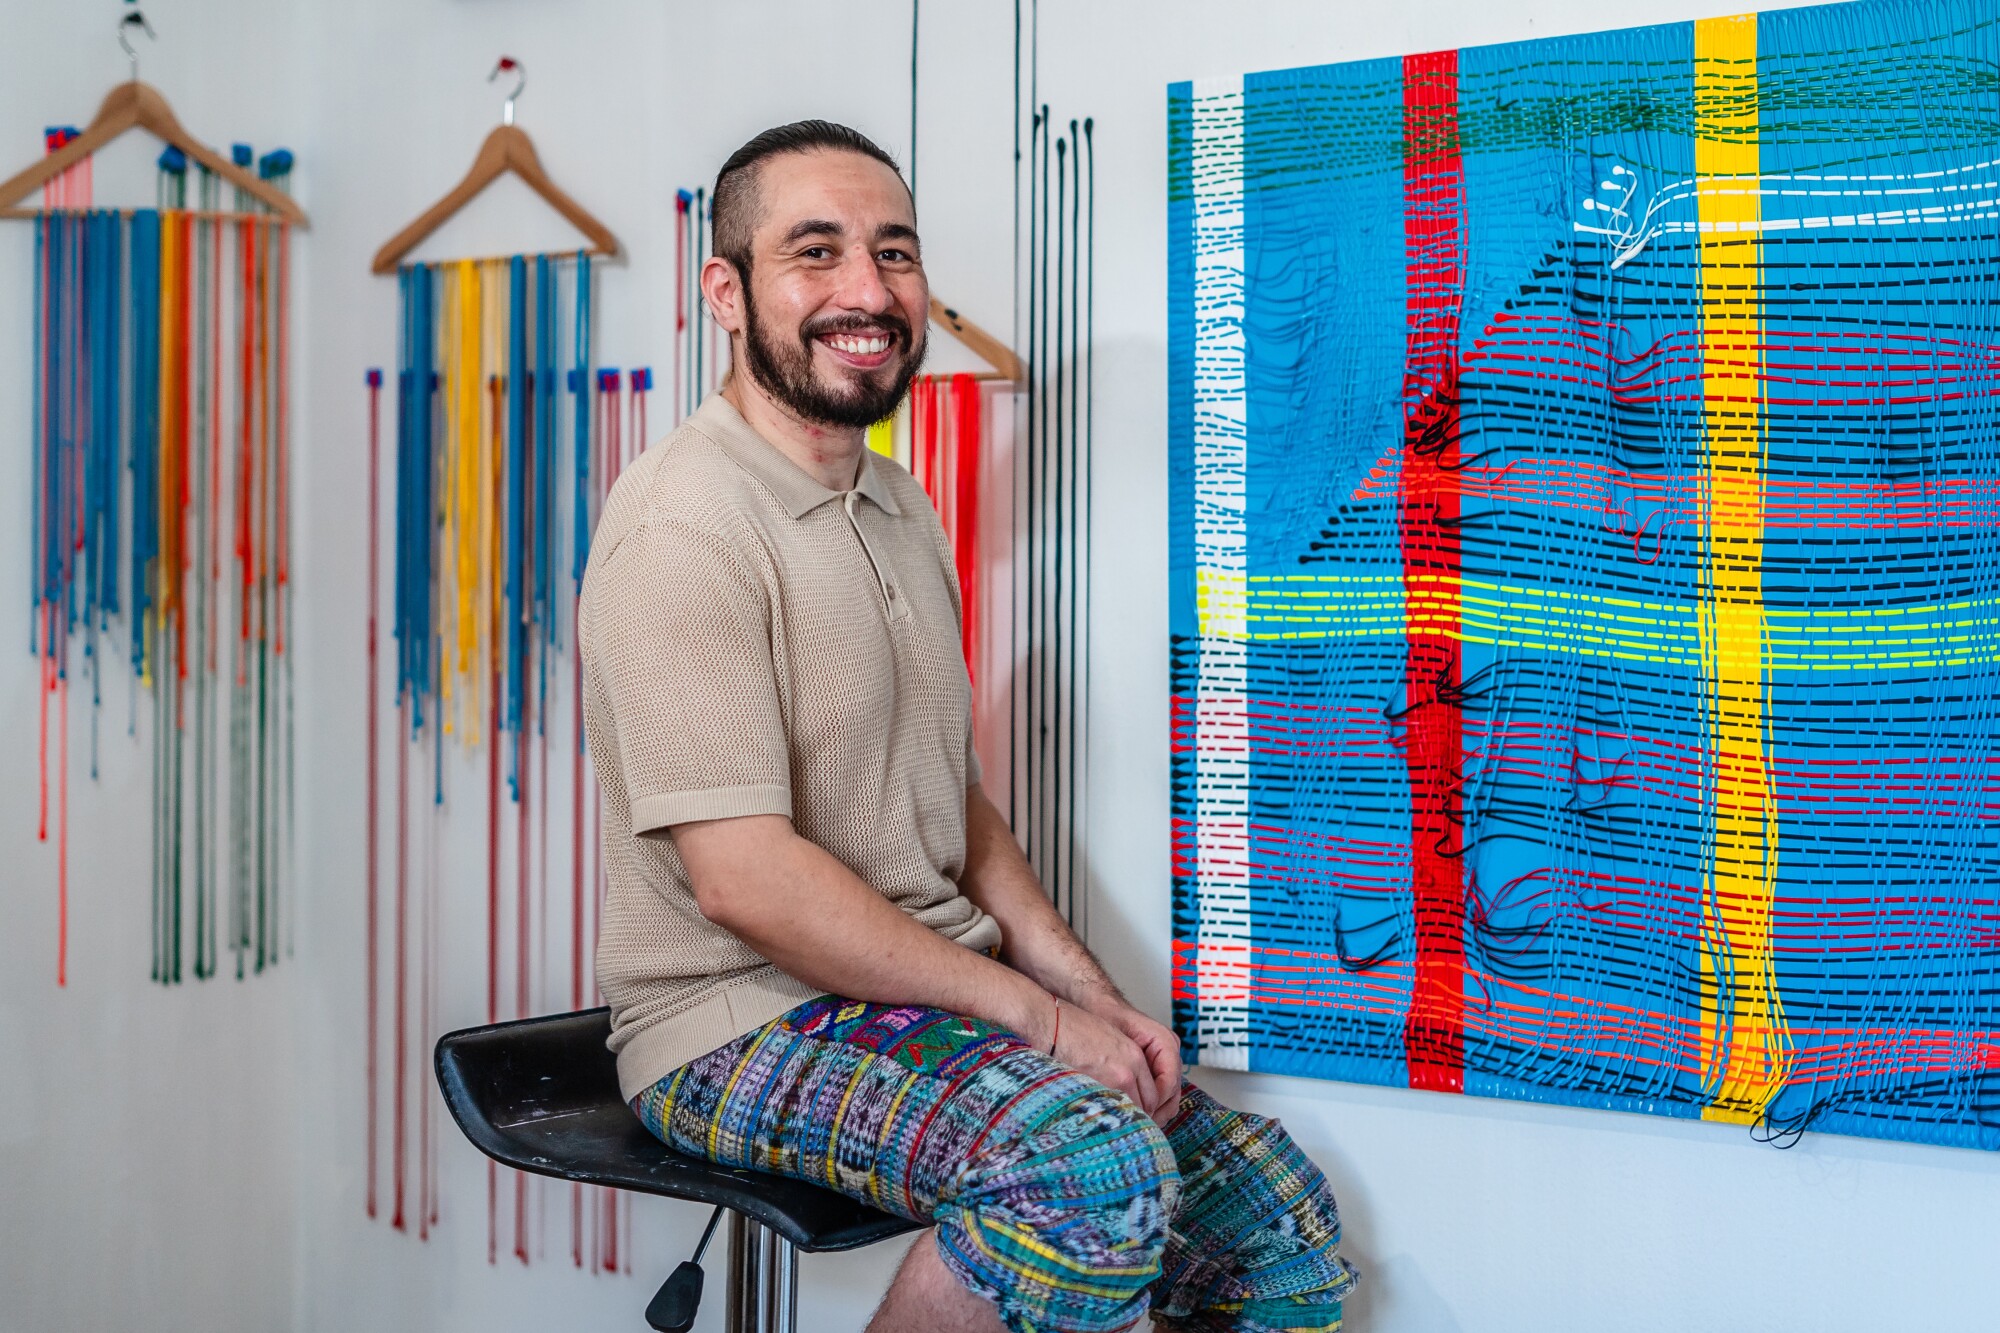 El artista Cristian García Olivo sentado frente a su pintura acrílica sobre una tabla de madera con escrito en ella "Artículos de primera necesidad" 